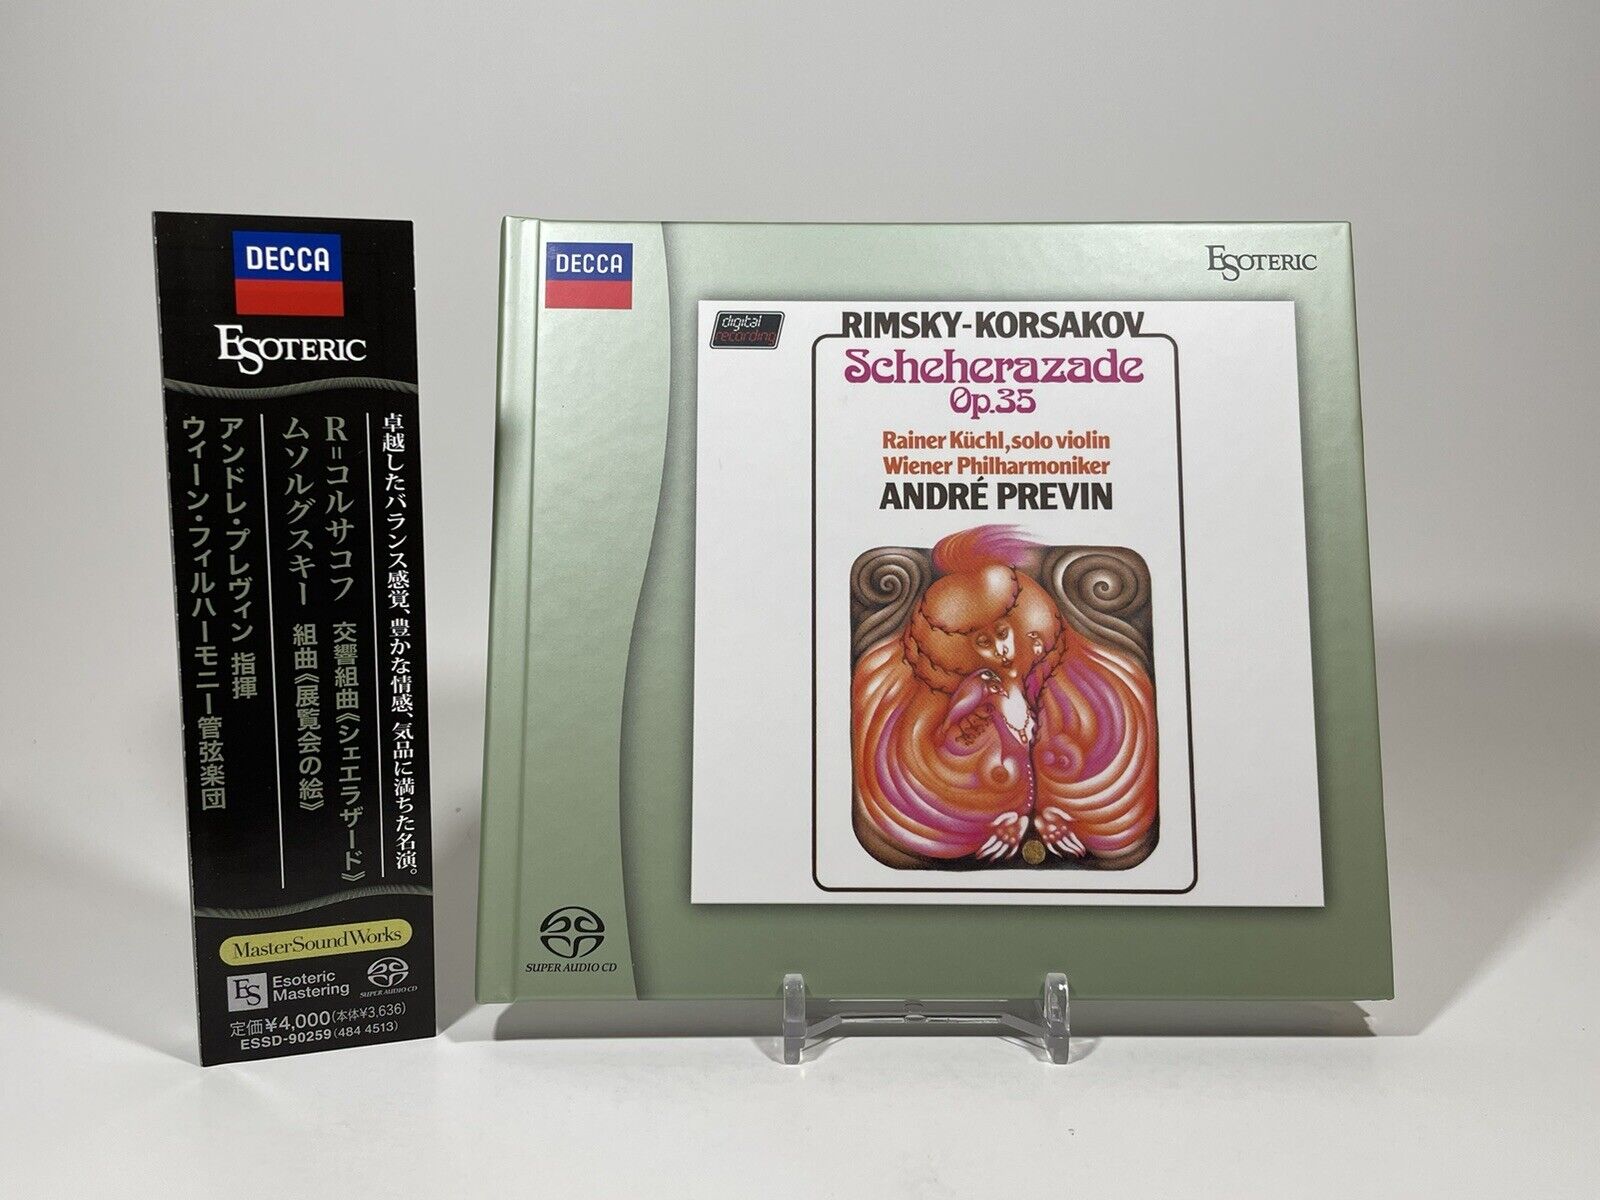 SACD: Rimsky-Korsakov Scheherazade Previn Japan Super Audio CD DSD Esoteric